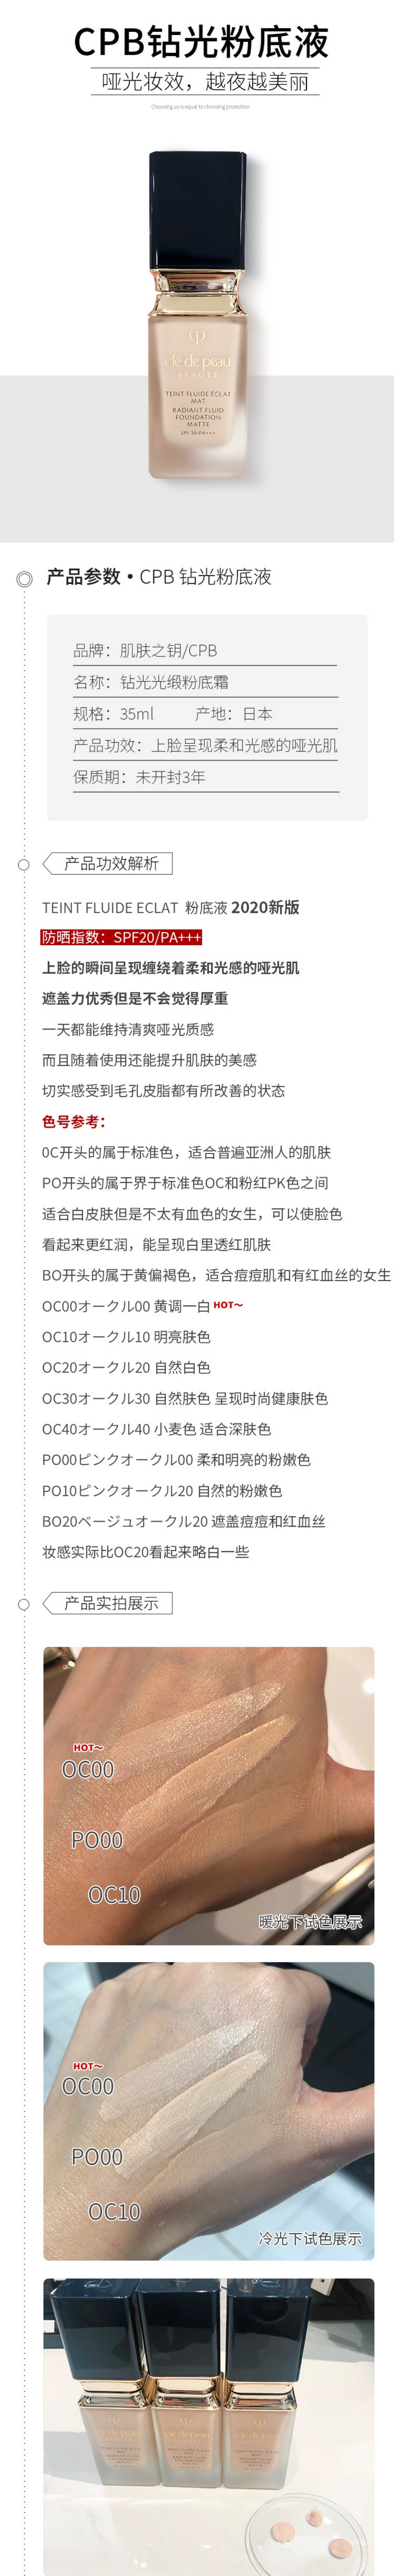 【日本直邮】日本本土版 资生堂CPB 2020新款钻光粉底液 哑光持久轻薄 OC00 35ml